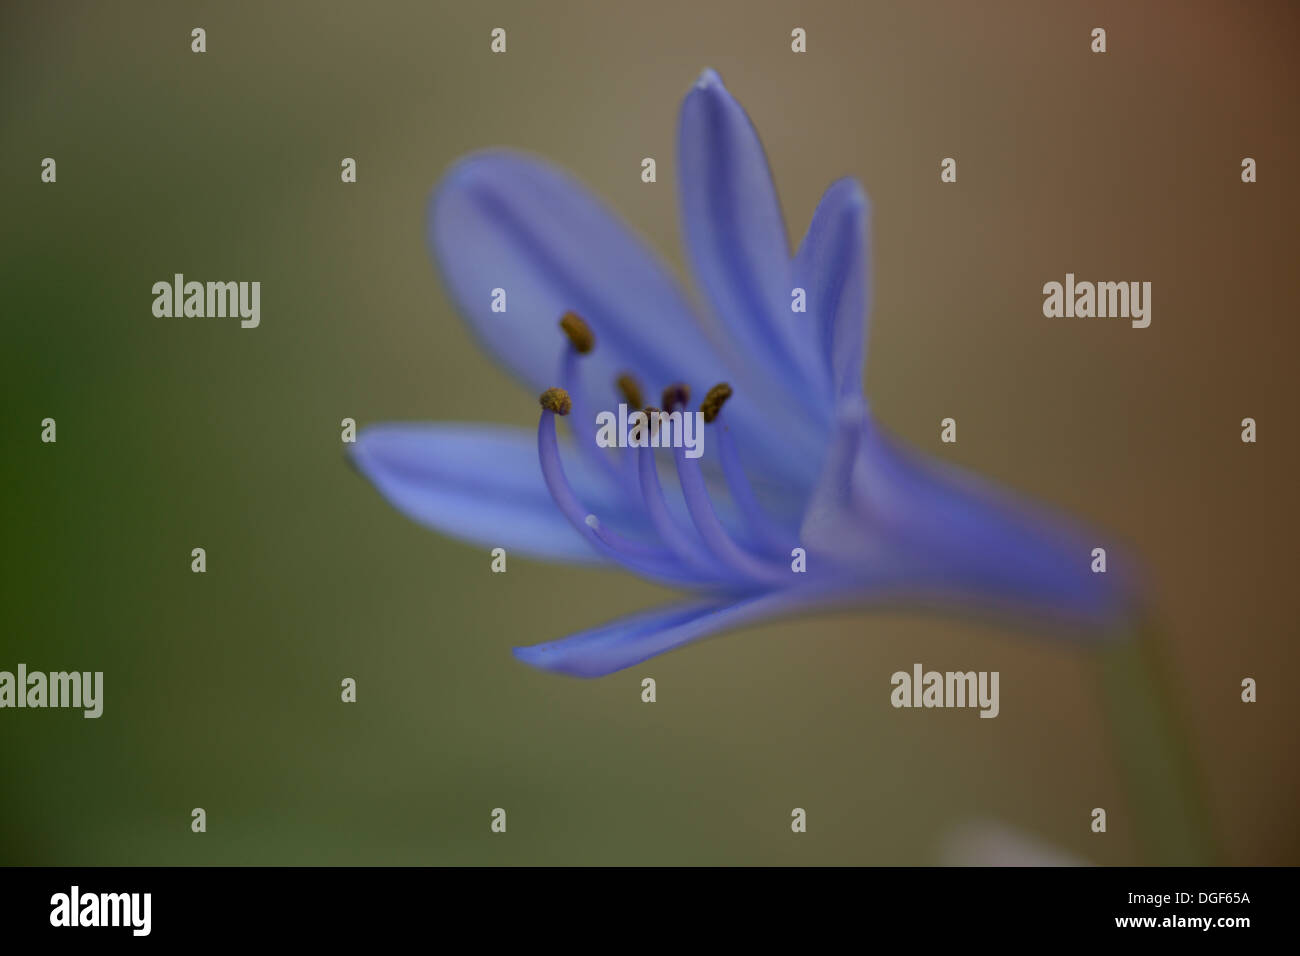 Macro image of agapanthus flower Stock Photo